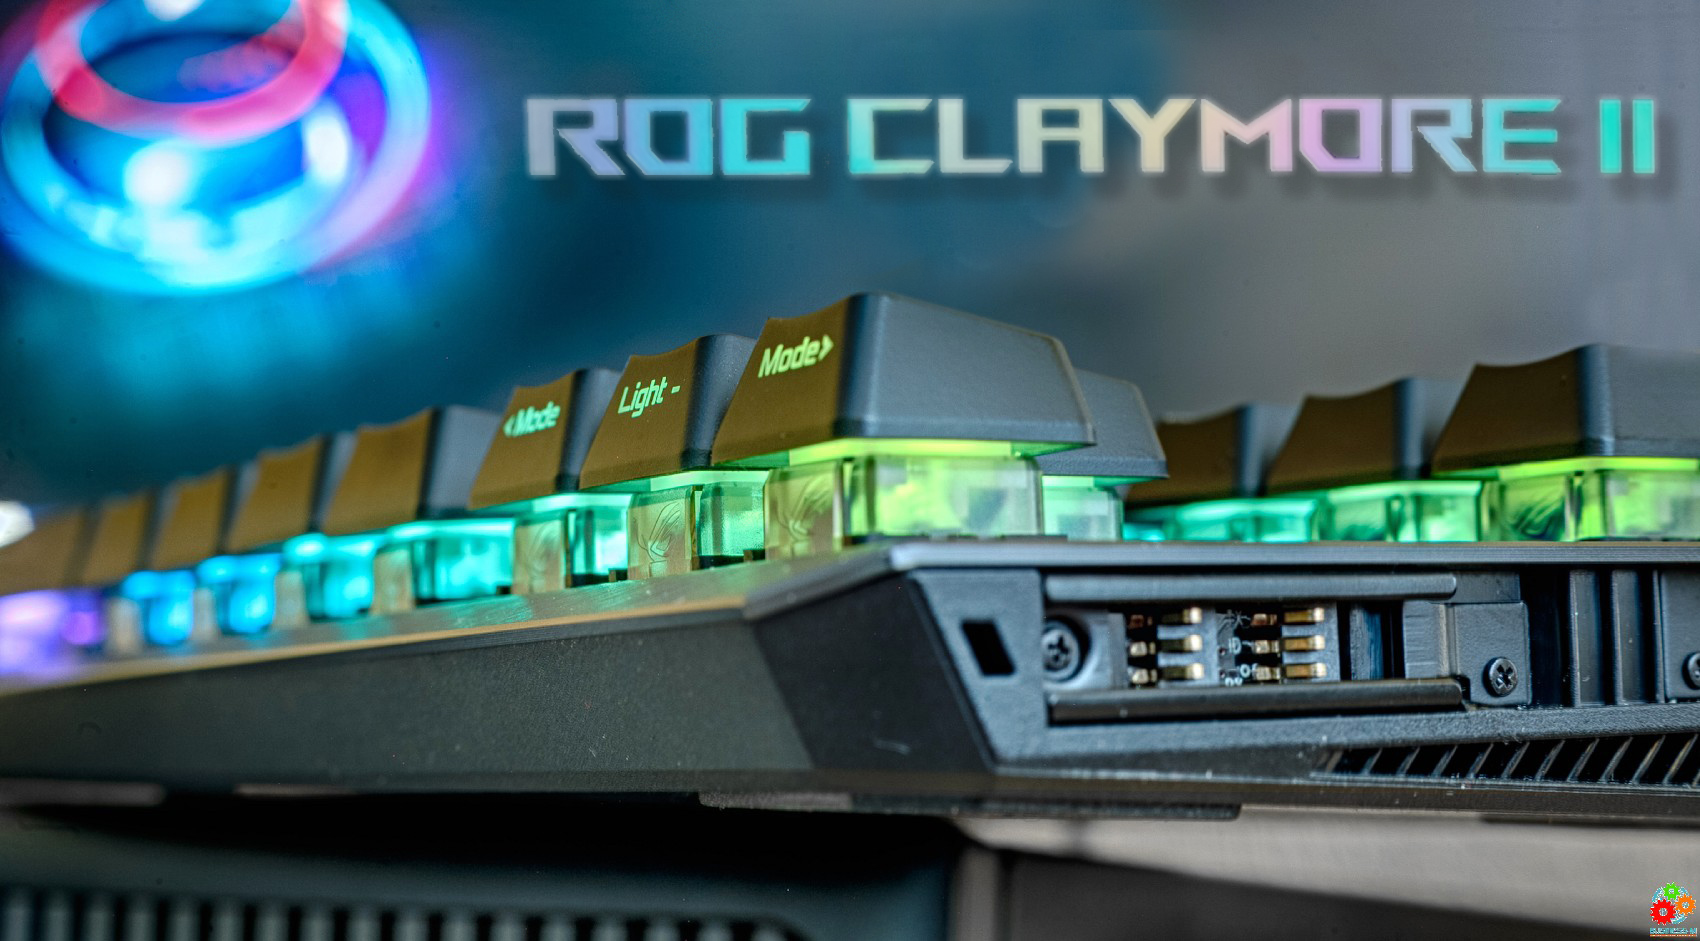 ASUS ROG Claymore II — клавиатура по цене процессора?